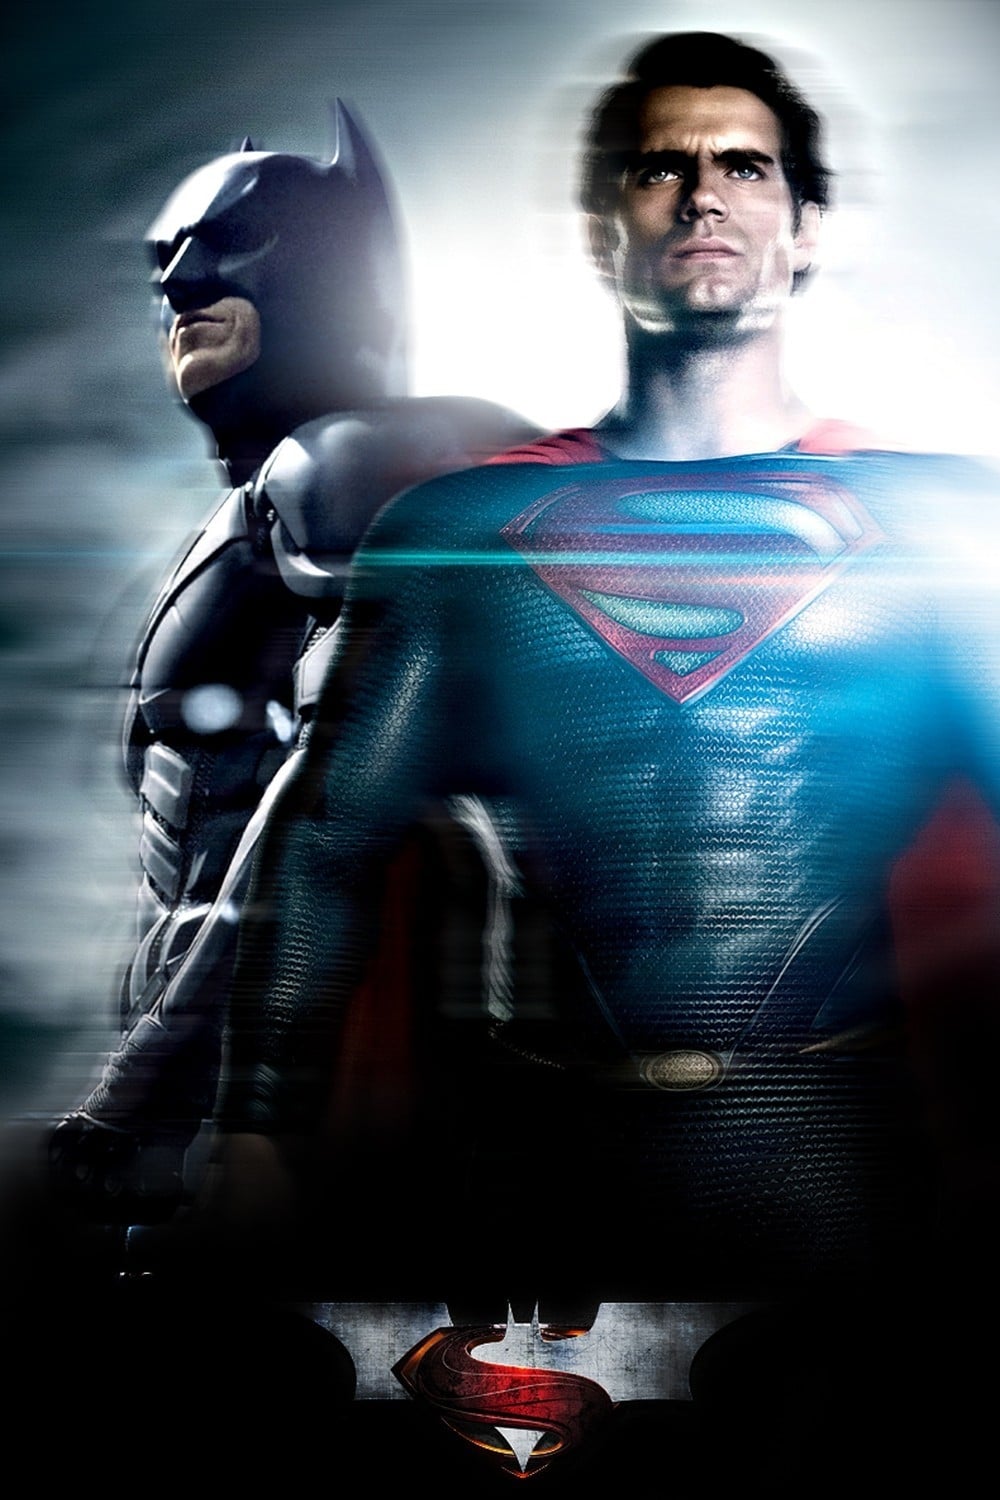 Batman V Superman - Batman Vs Superman Wallpaper Download - HD Wallpaper 